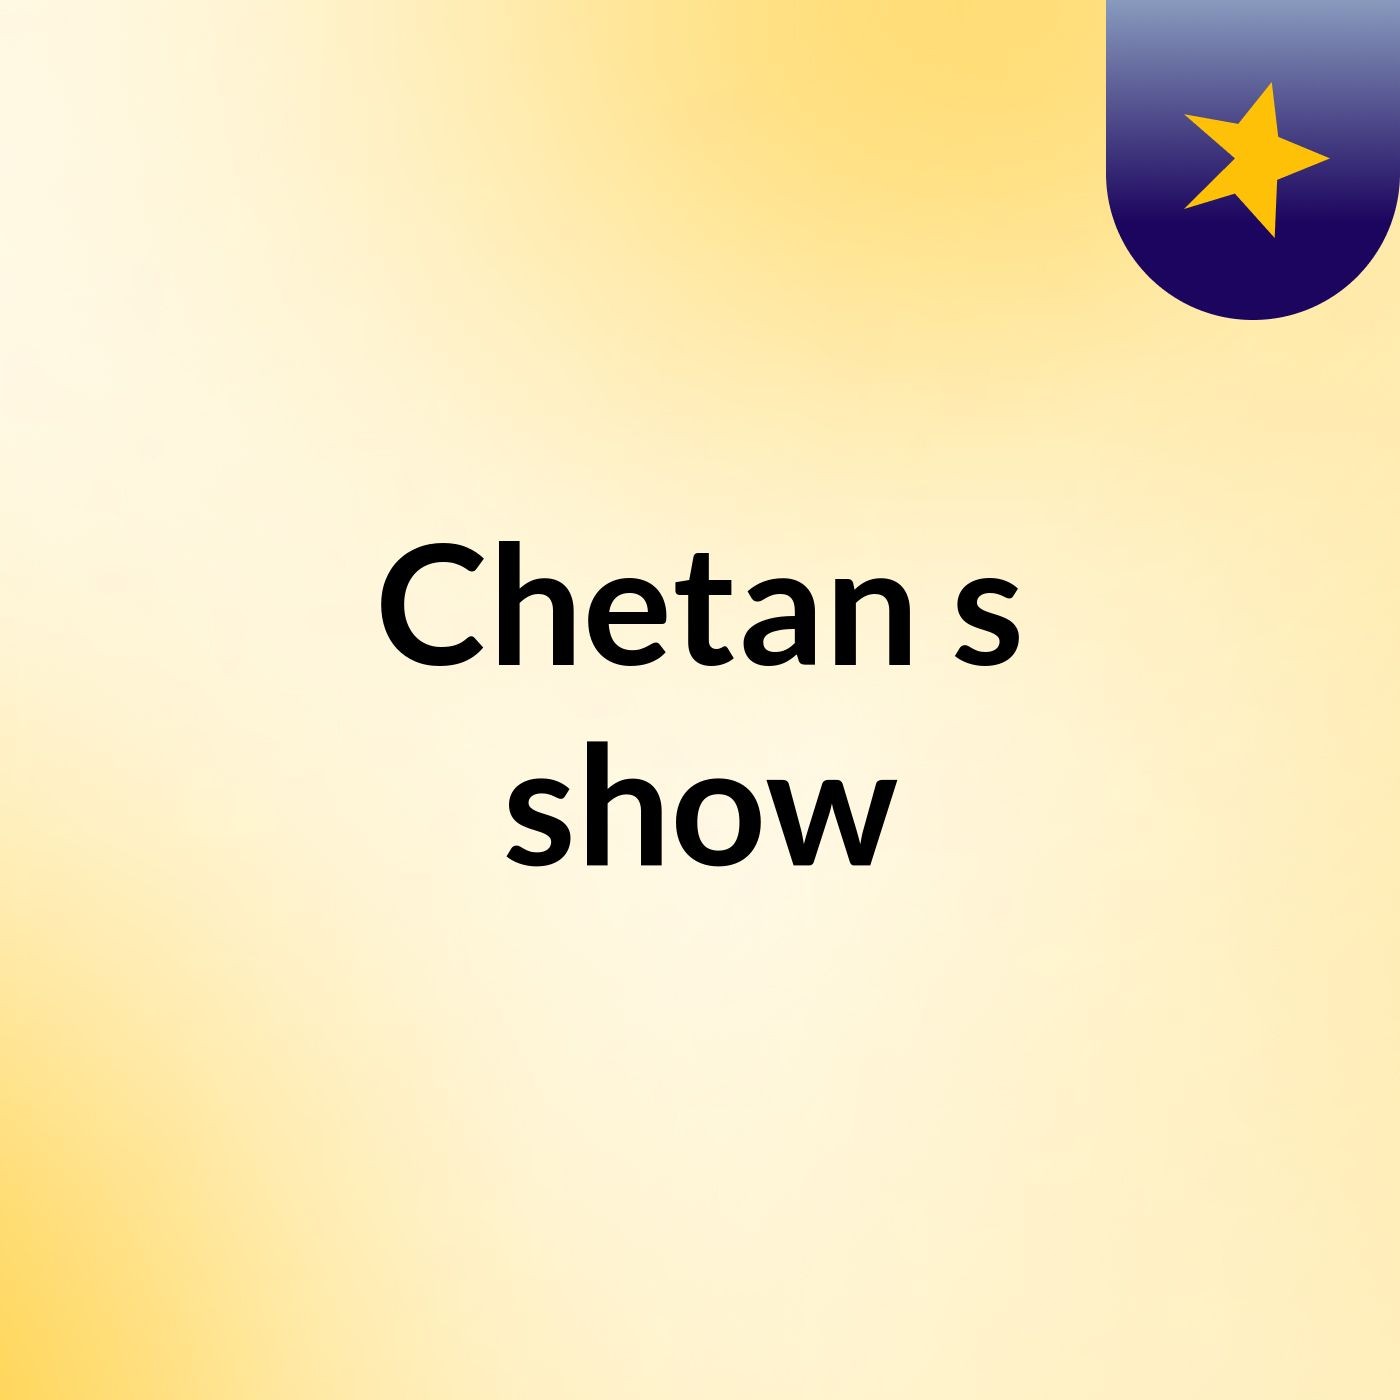 Chetan's show